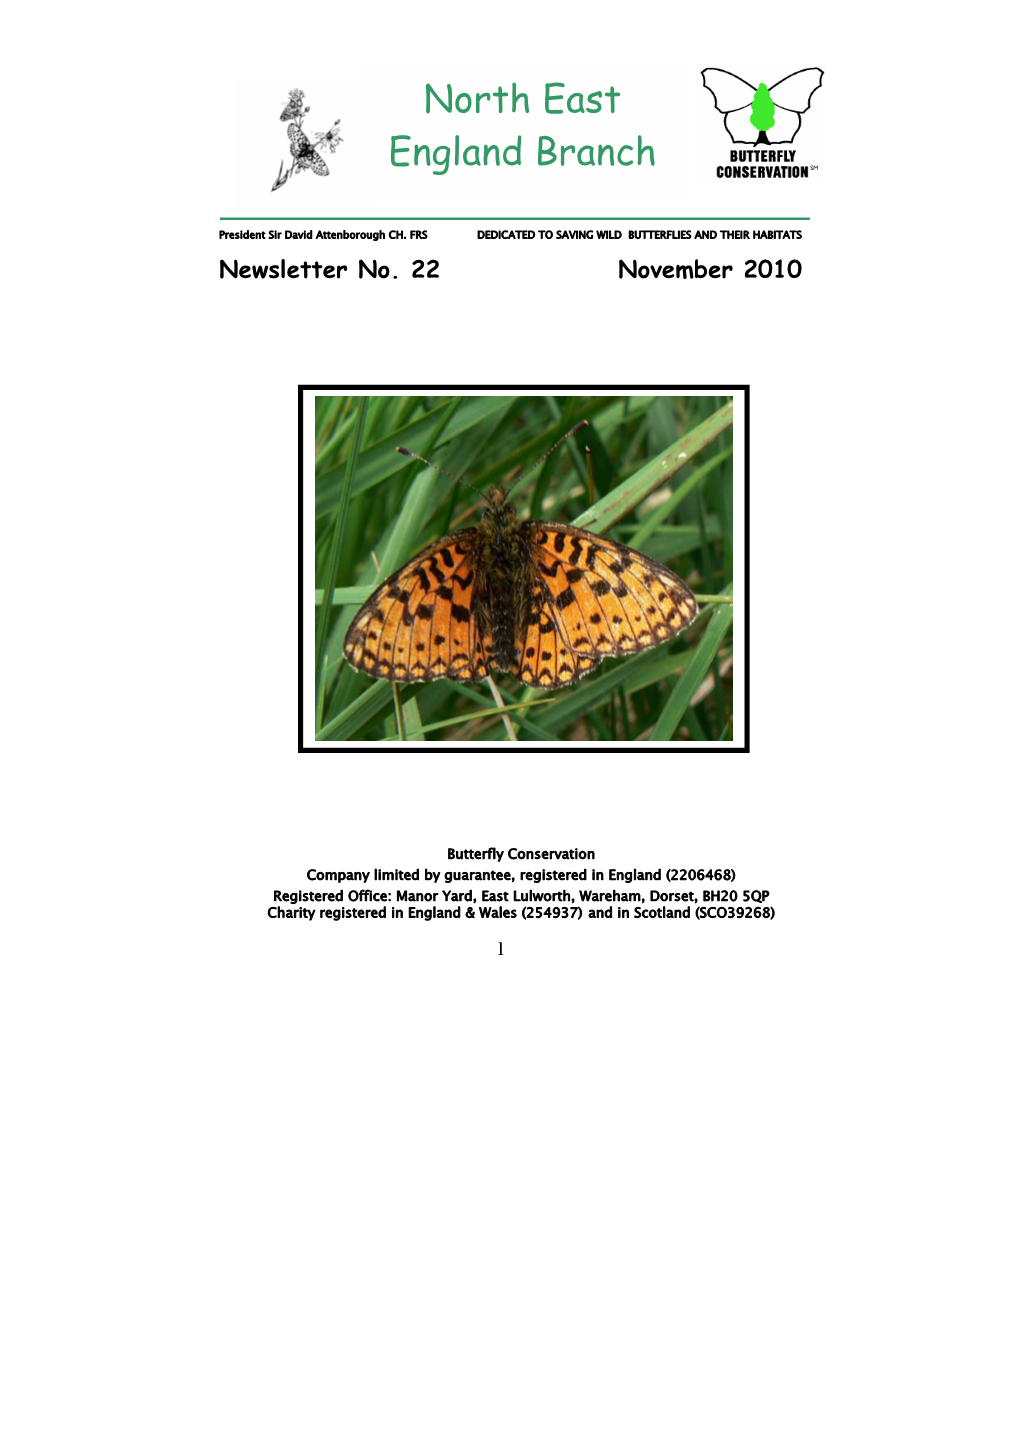 Autumn 2010 Newsletter